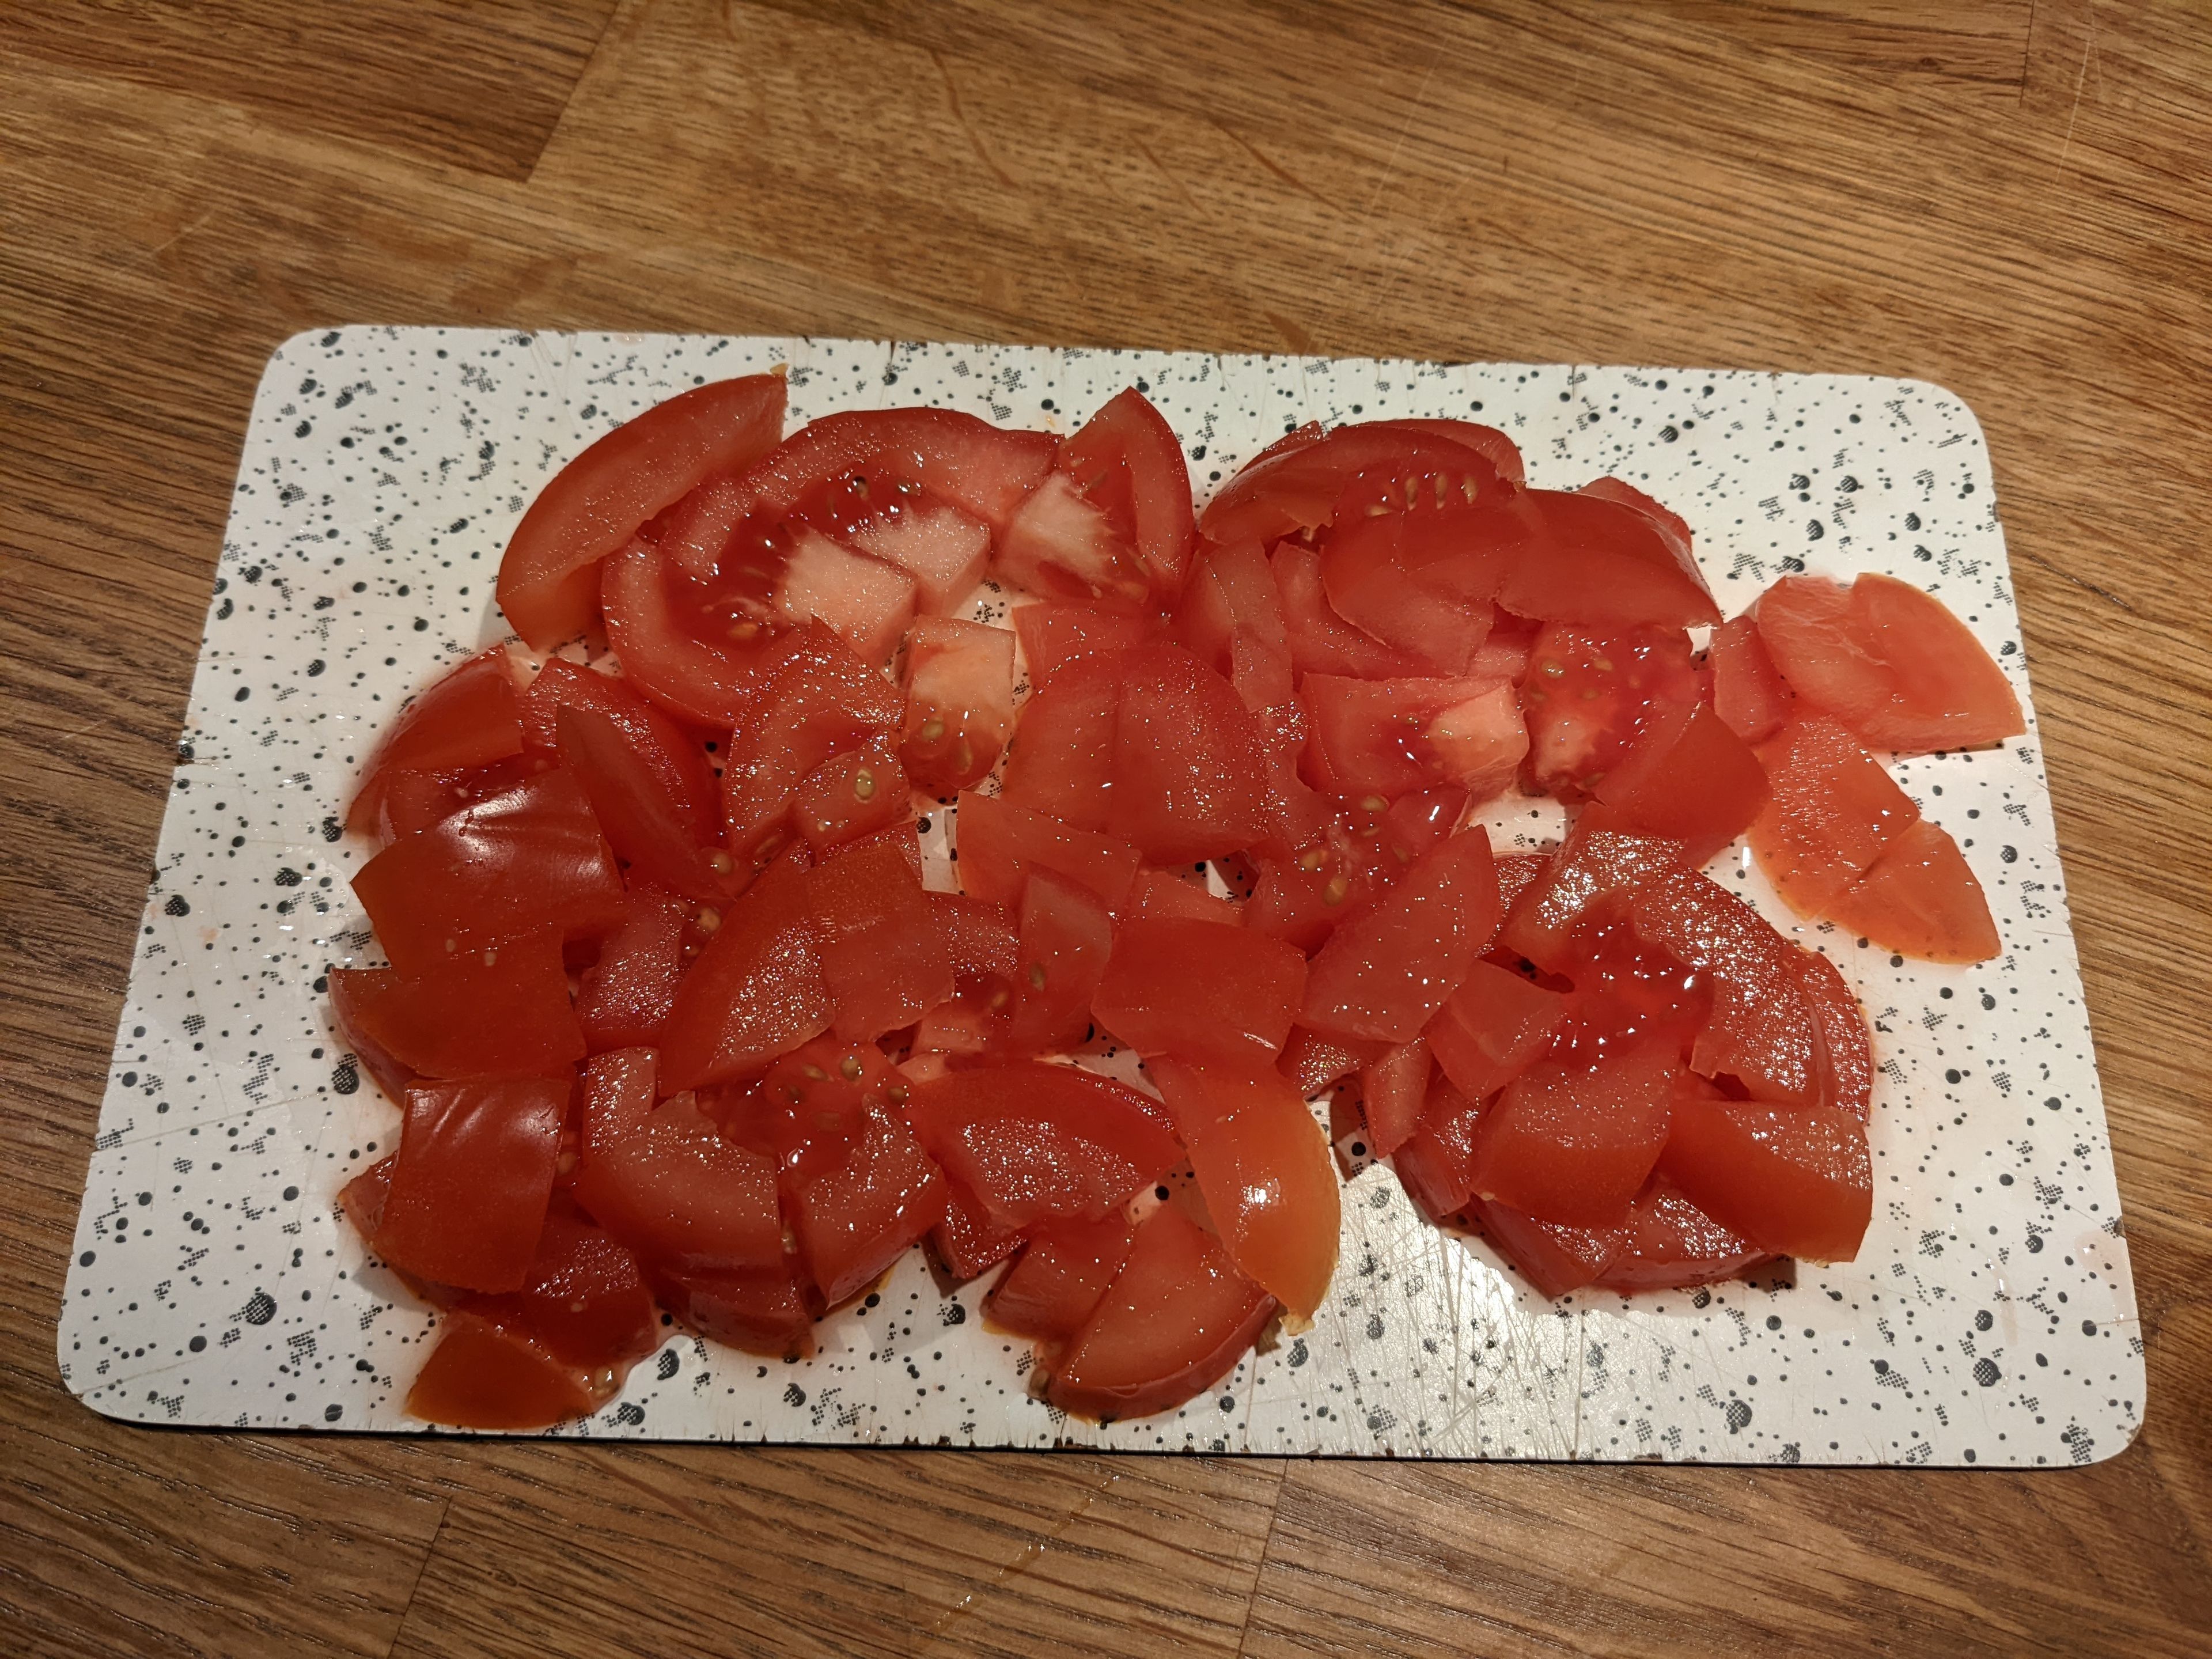 Wechseln auf den 3D-Rührer. Etwas Öl von den getrockneten Tomaten nutzen, um Zwiebeln, Knoblauch, getrocknete Tomaten und Oliven bei geschlossenem Deckel, ohne Messbecher, anzudünsten (3D-Rührer I Stufe 4 I 120°C I 3 Min.). Währenddessen können die Tomaten in Würfel geschnitten werden.